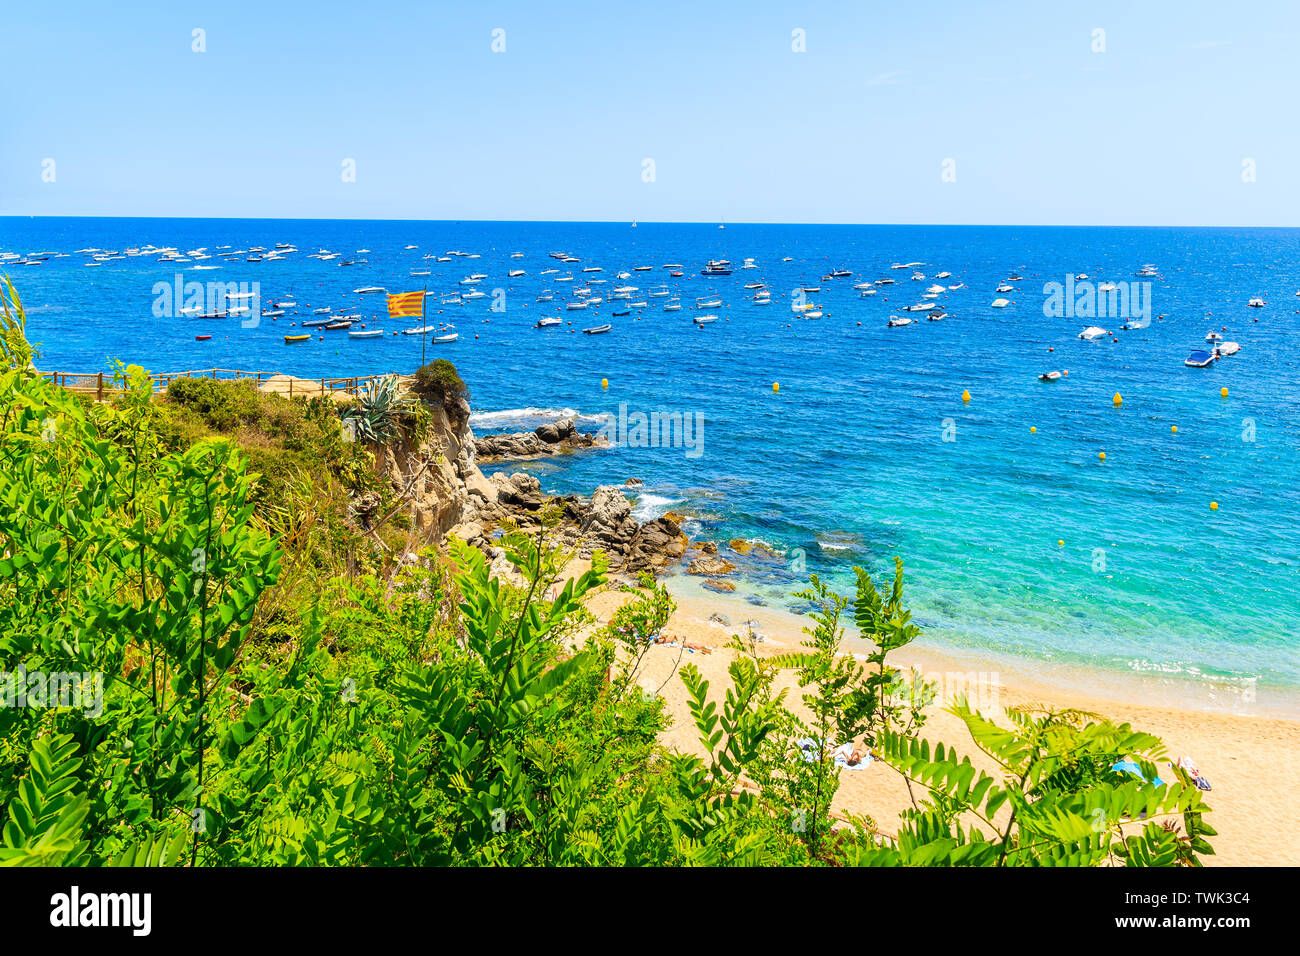 Bellissima spiaggia di Calella de Palafrugell, scenic villaggio di pescatori con case bianche e la spiaggia di sabbia chiara con acqua blu in Costa Brava Catalogna Foto Stock